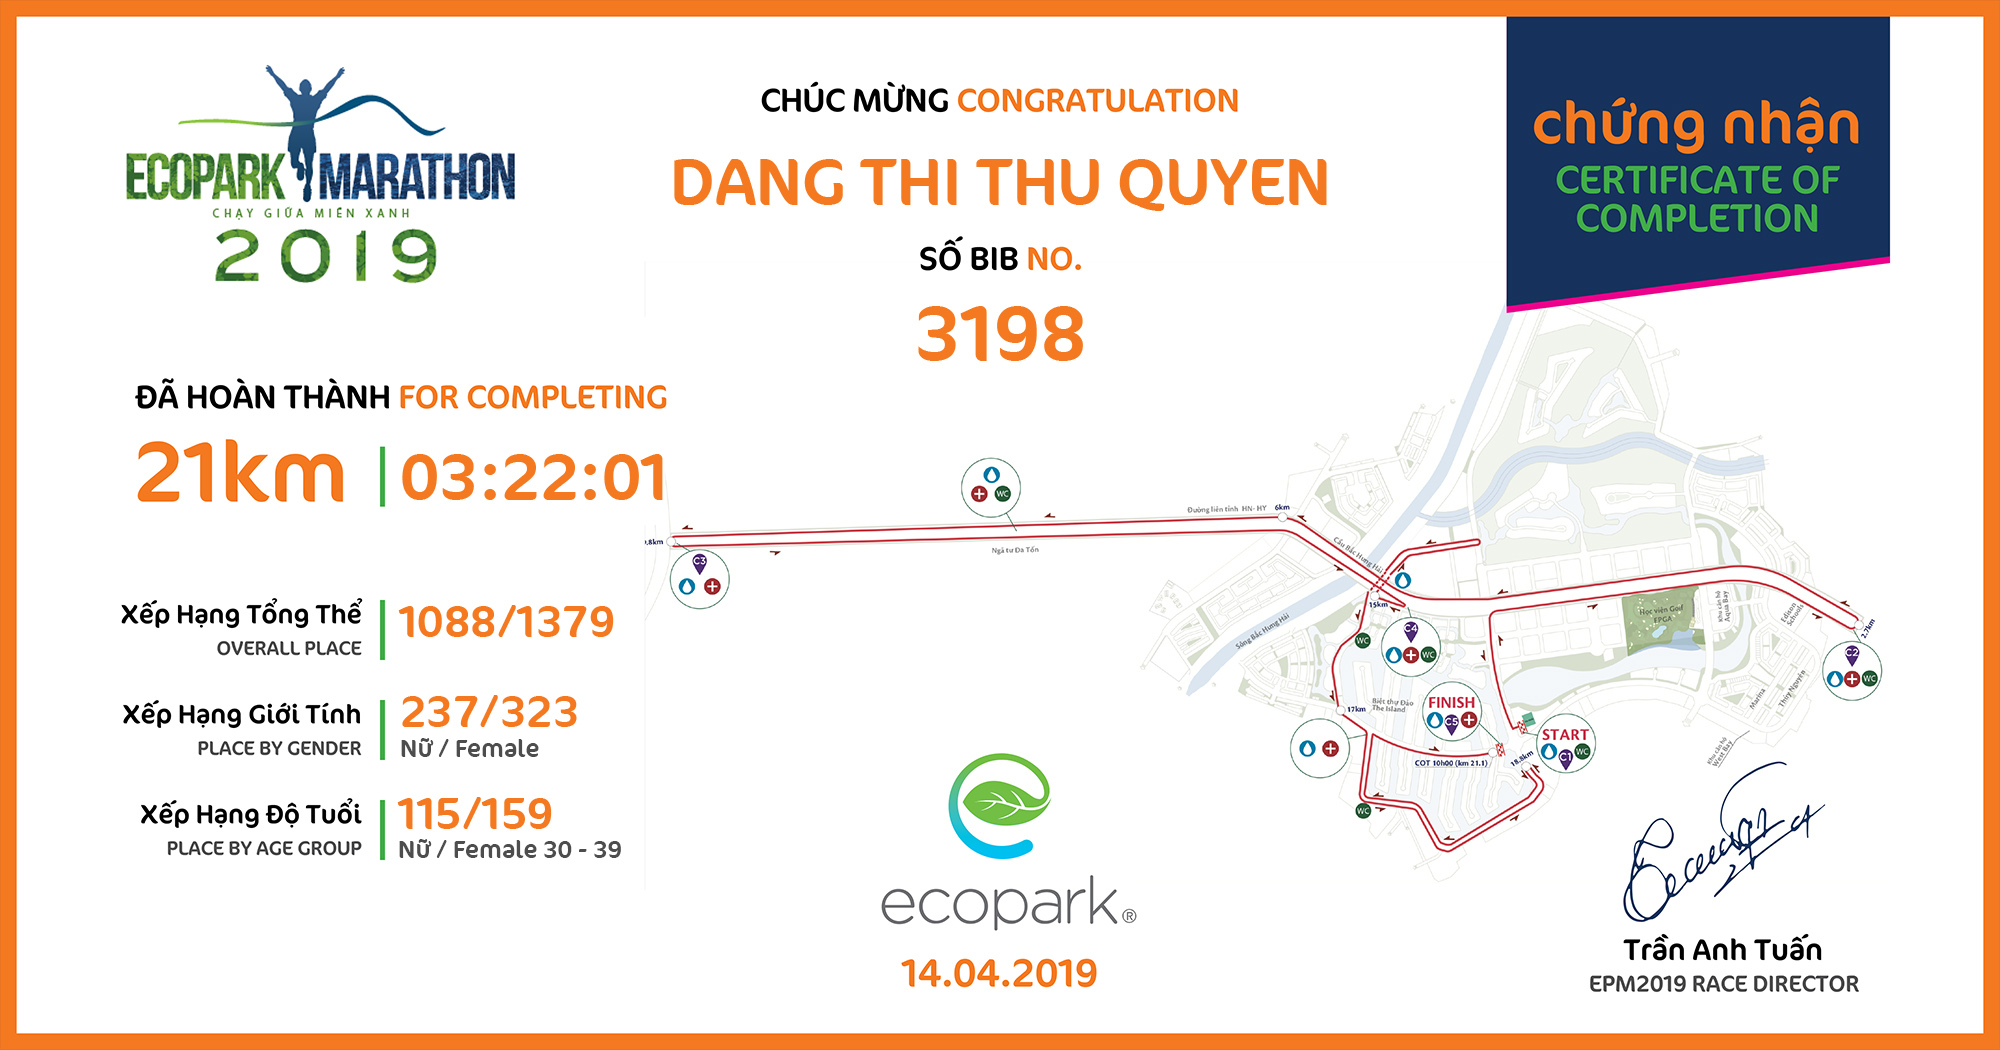 3198 - Dang Thi Thu Quyen